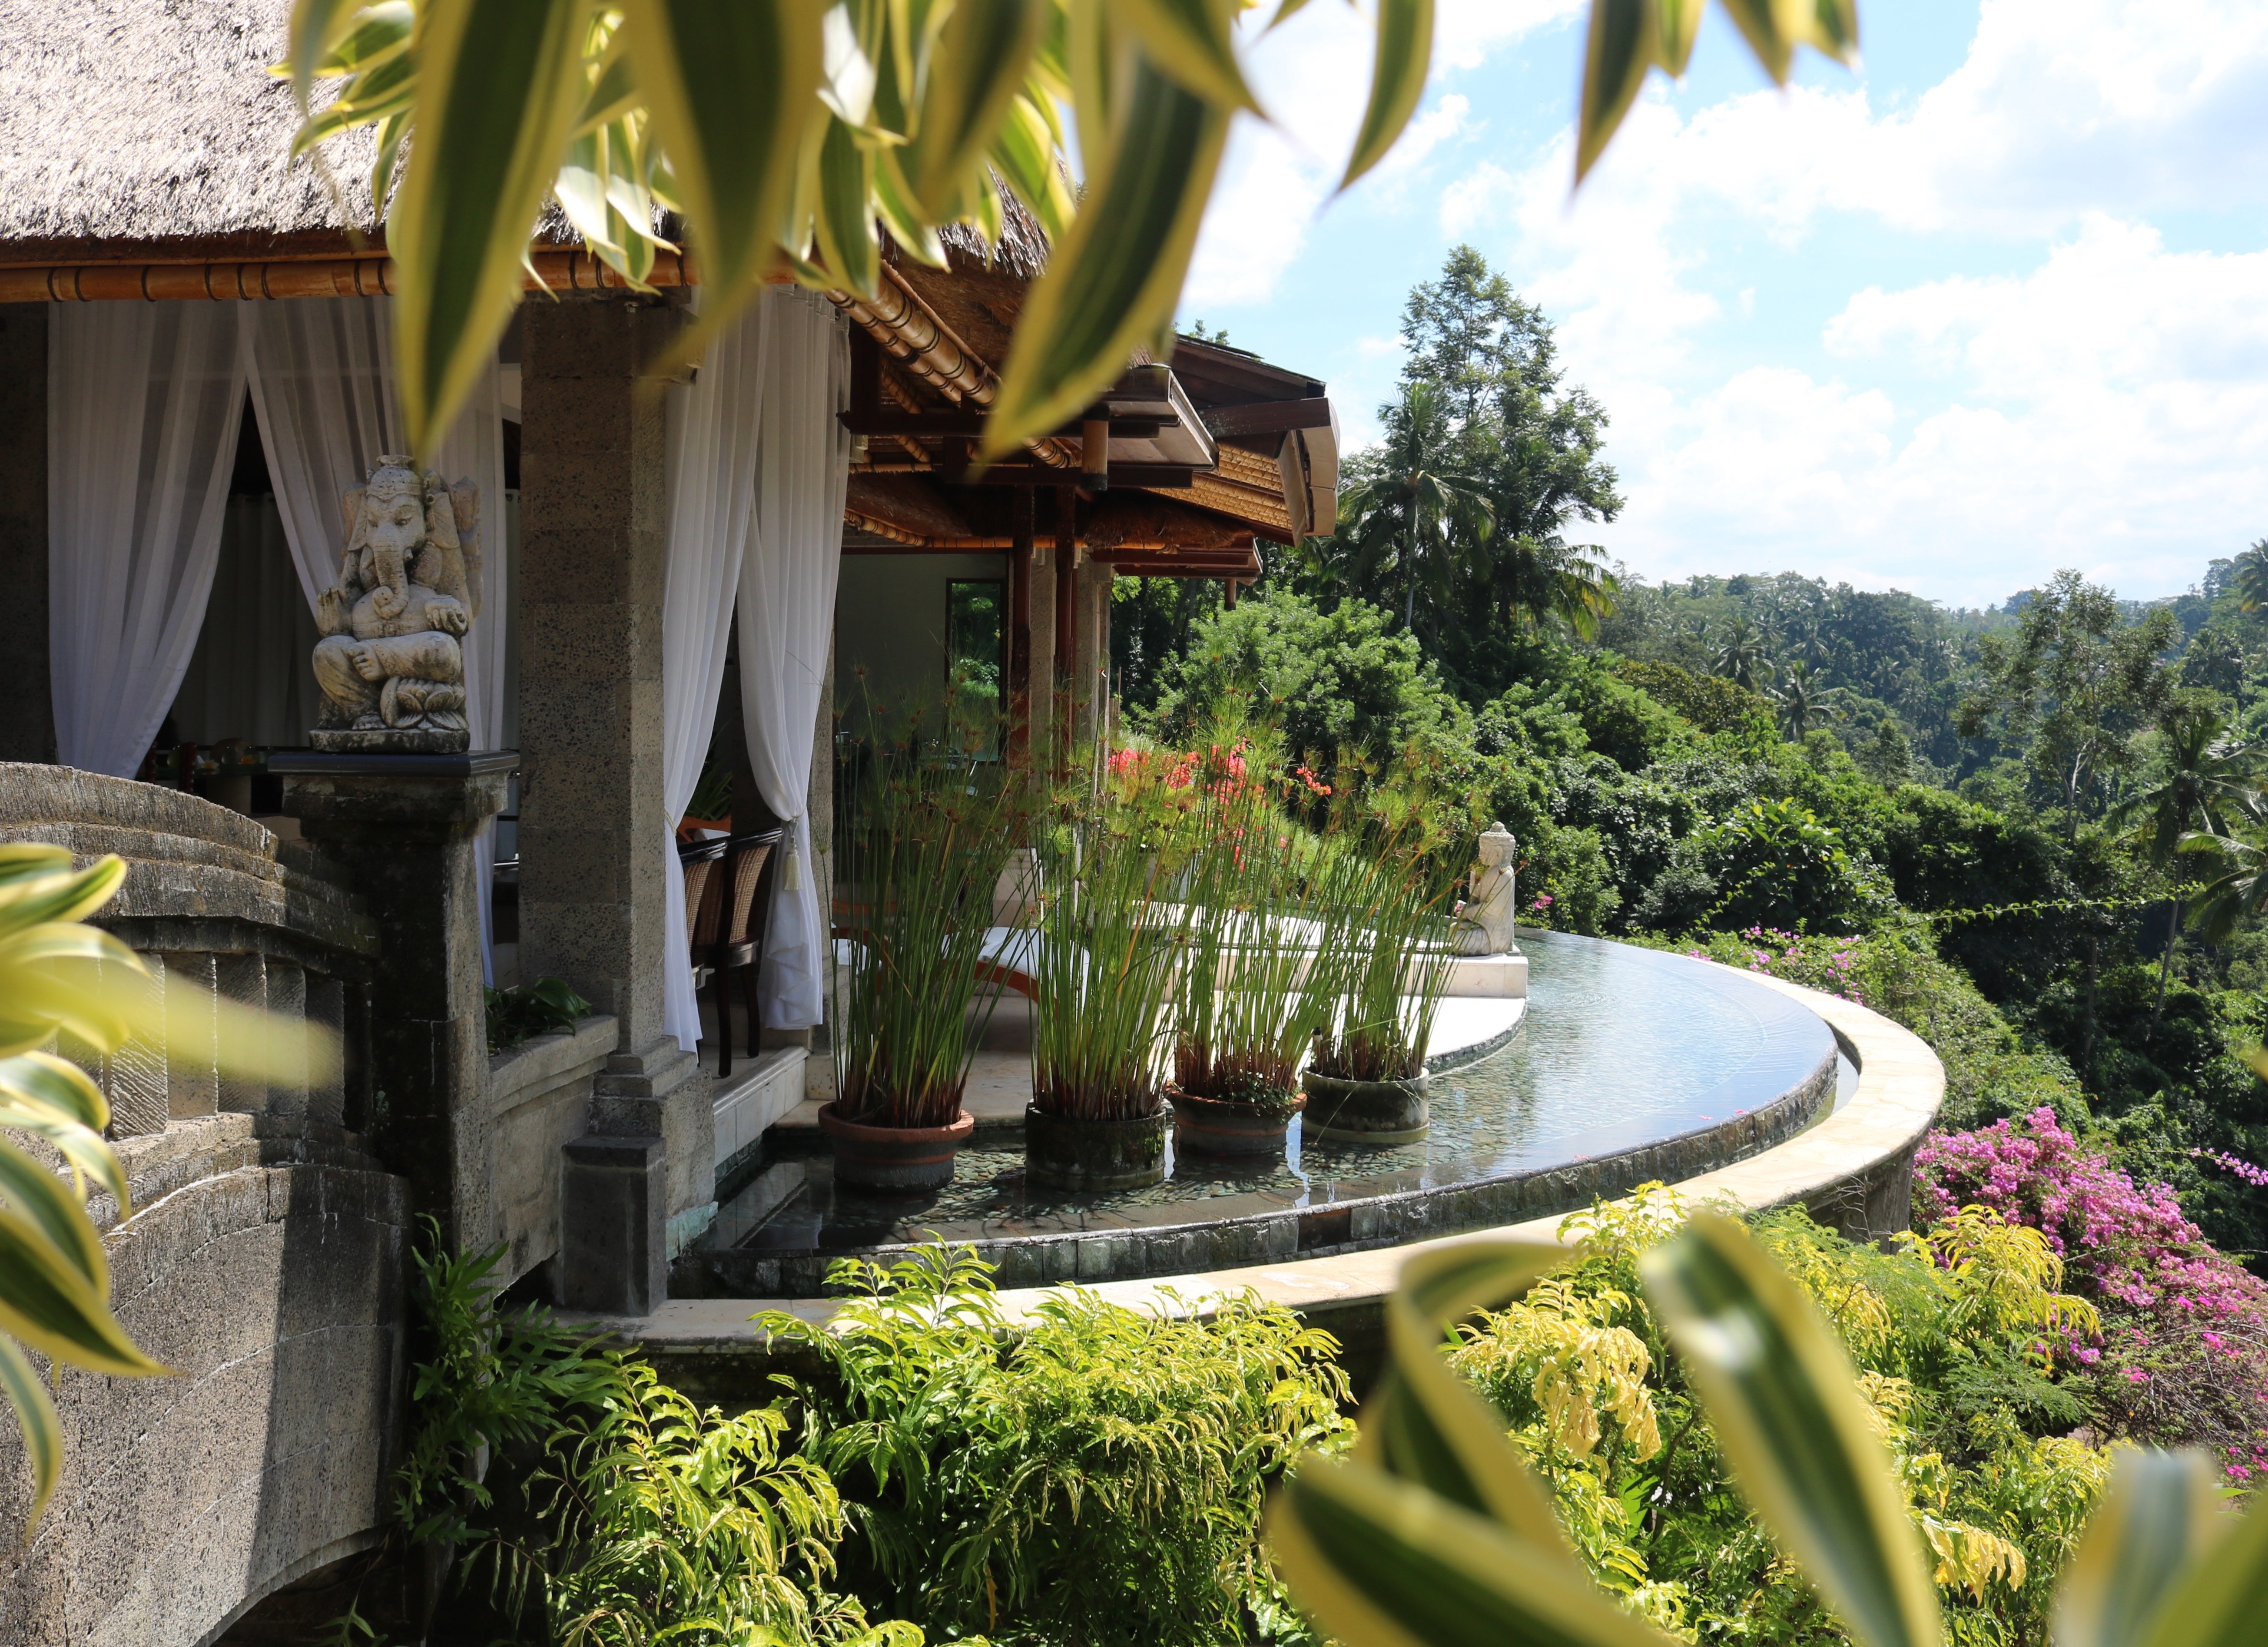 The Lembah Spa at The Viceroy Bali